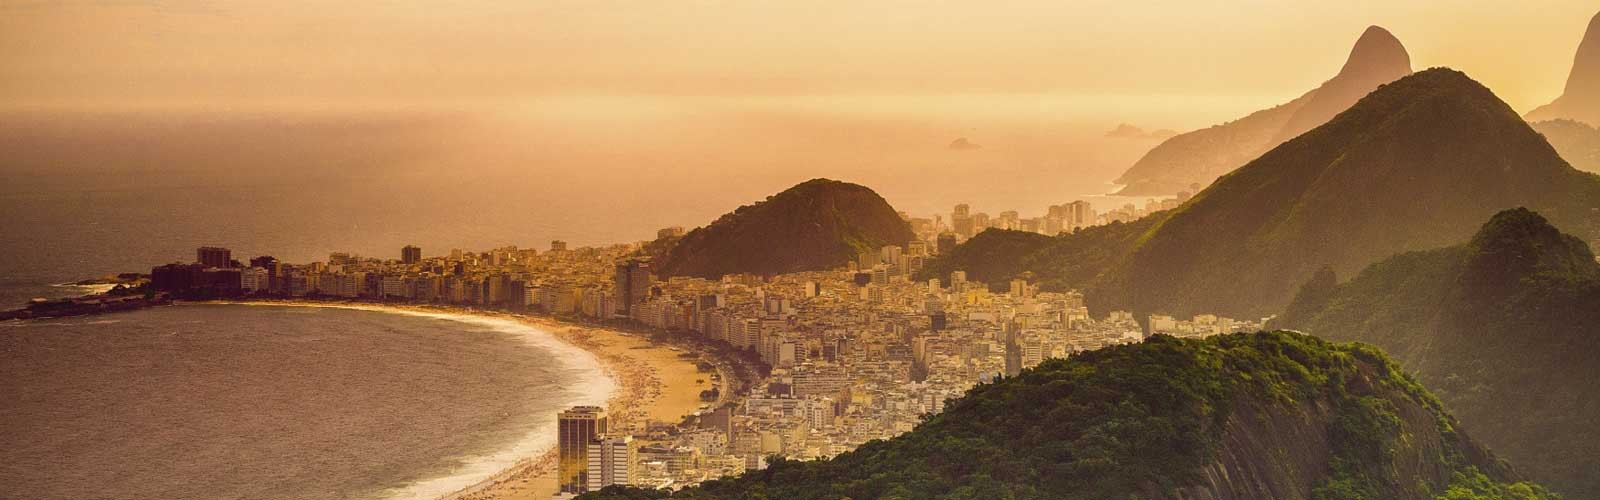 Viaje de incentivo a Brasil